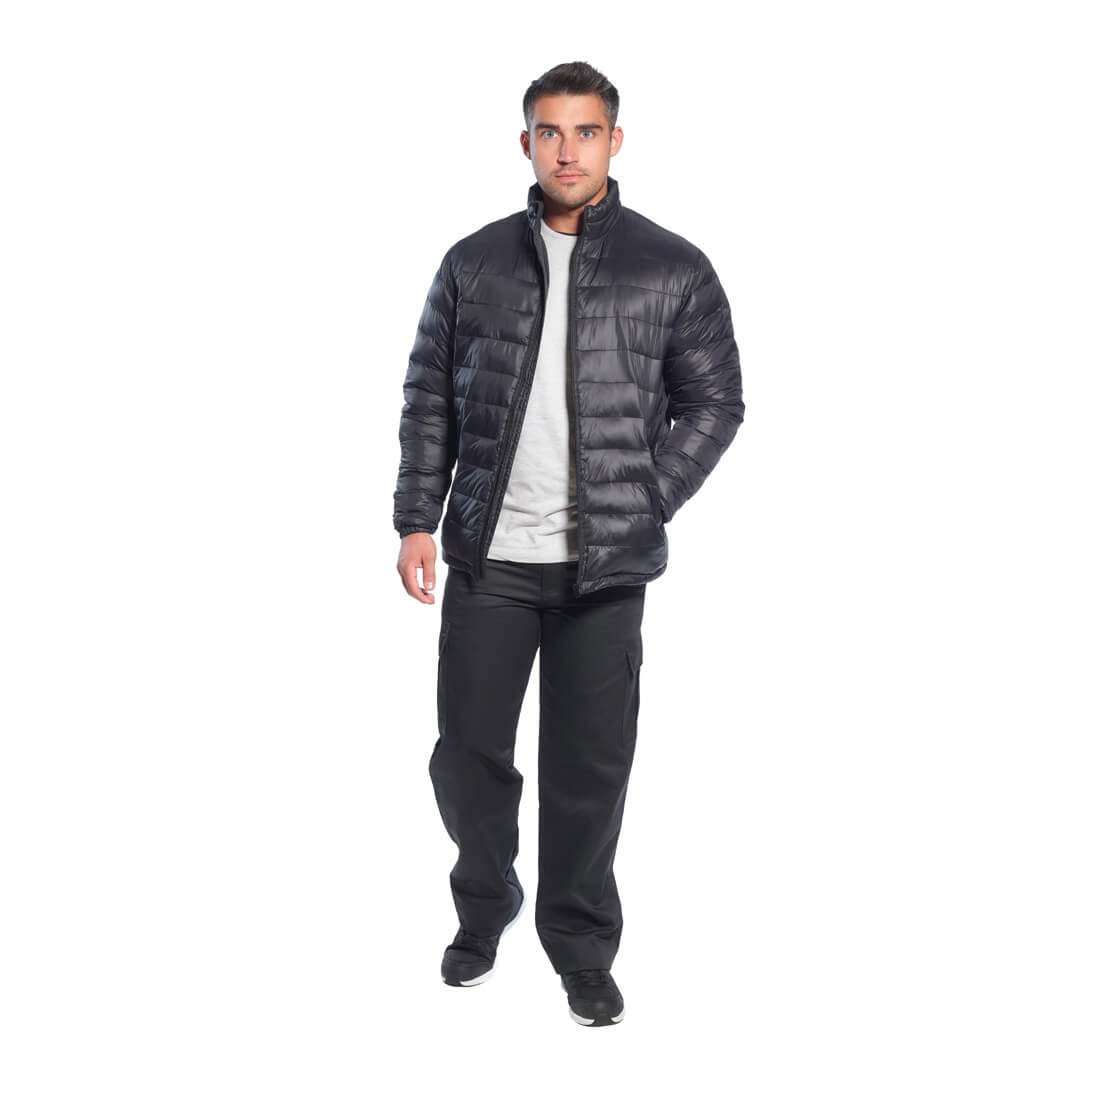 Aspen Jacket - Safetywear